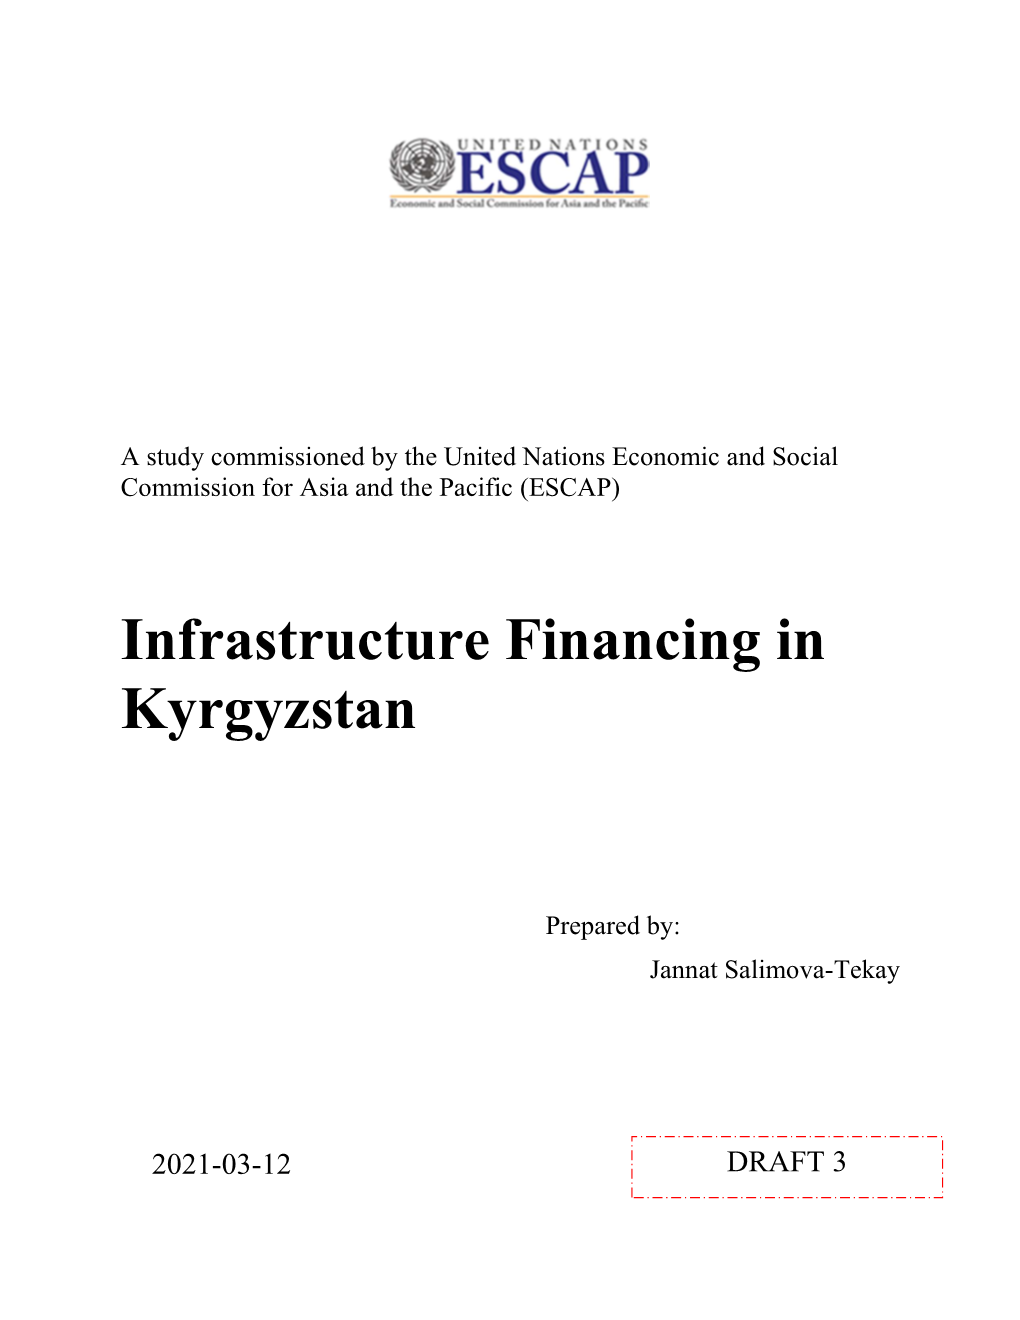 Infrastructure Financing in Kyrgyzstan